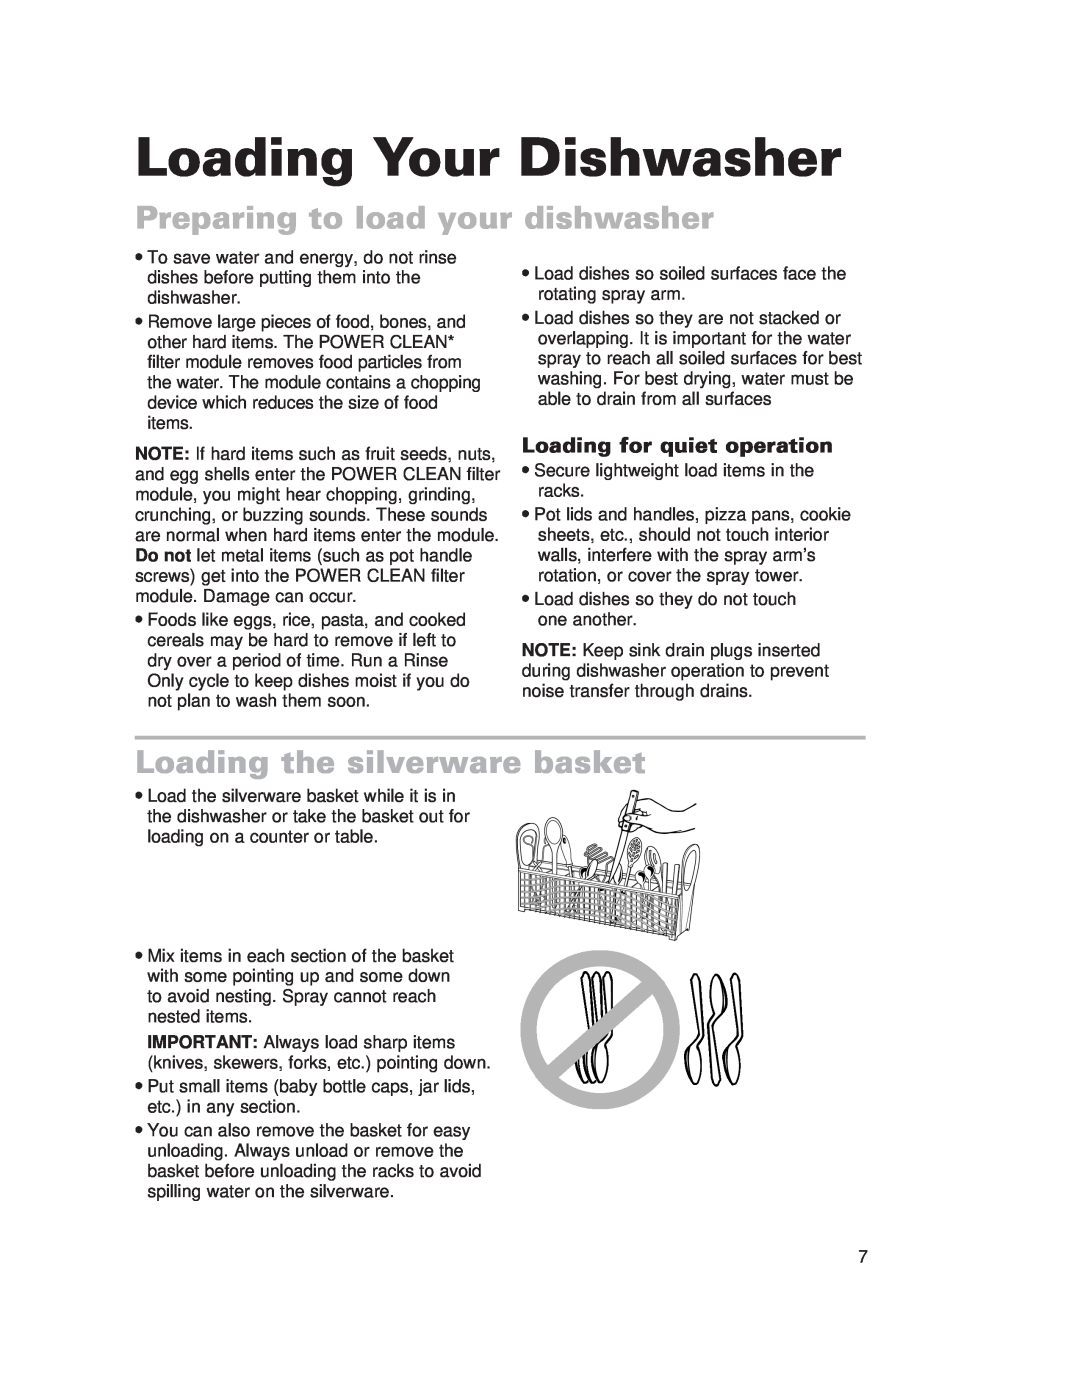 Whirlpool 910 Series warranty Loading Your Dishwasher, Preparing to load your dishwasher, Loading the silverware basket 